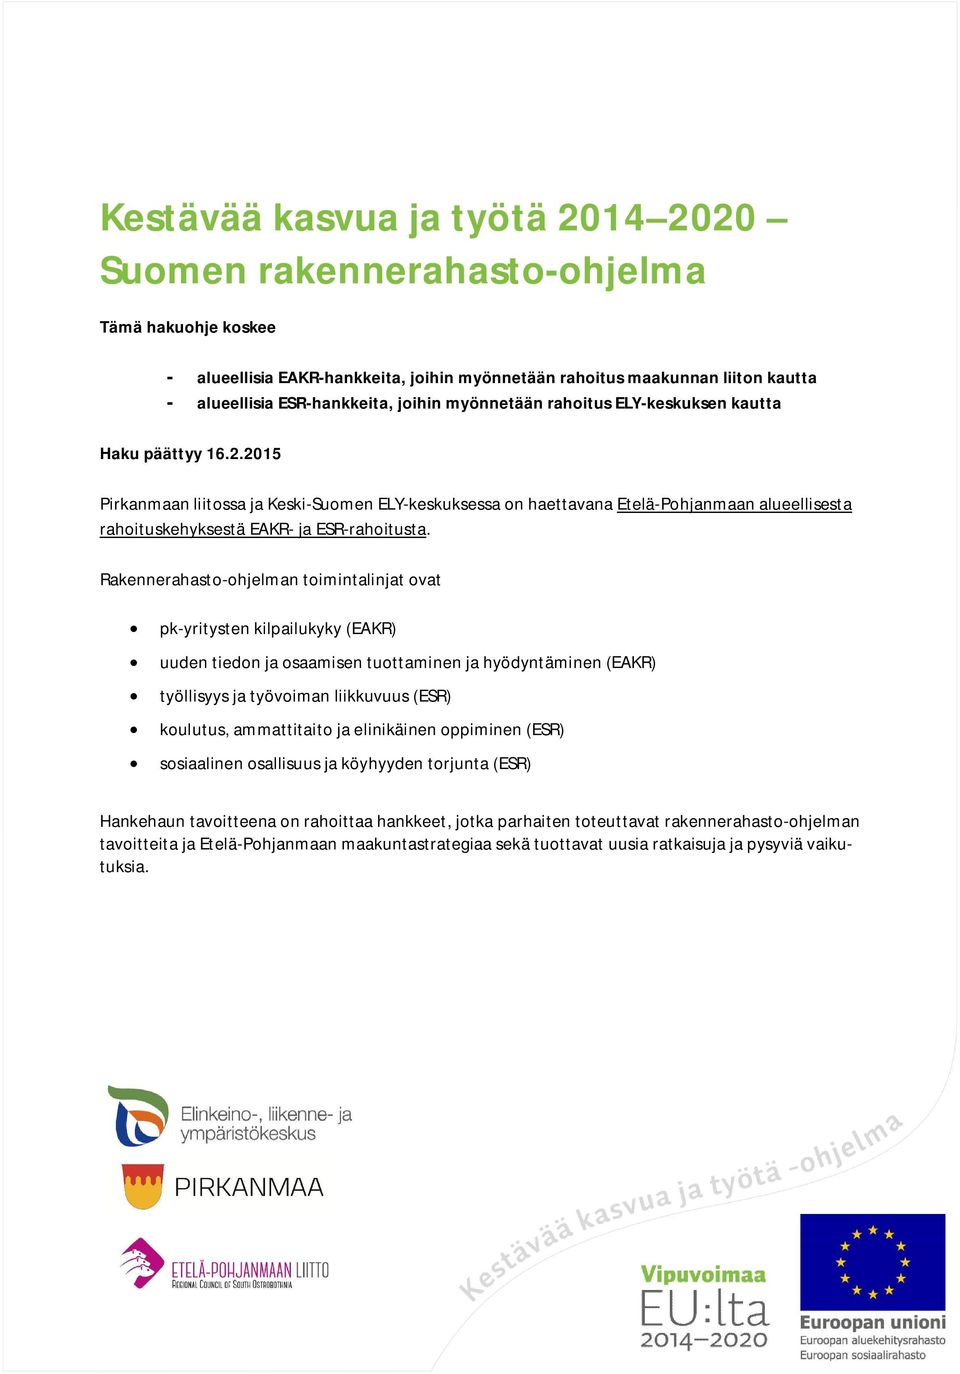 2015 Pirkanmaan liitossa ja Keski-Suomen ELY-keskuksessa on haettavana Etelä-Pohjanmaan alueellisesta rahoituskehyksestä EAKR- ja ESR-rahoitusta.